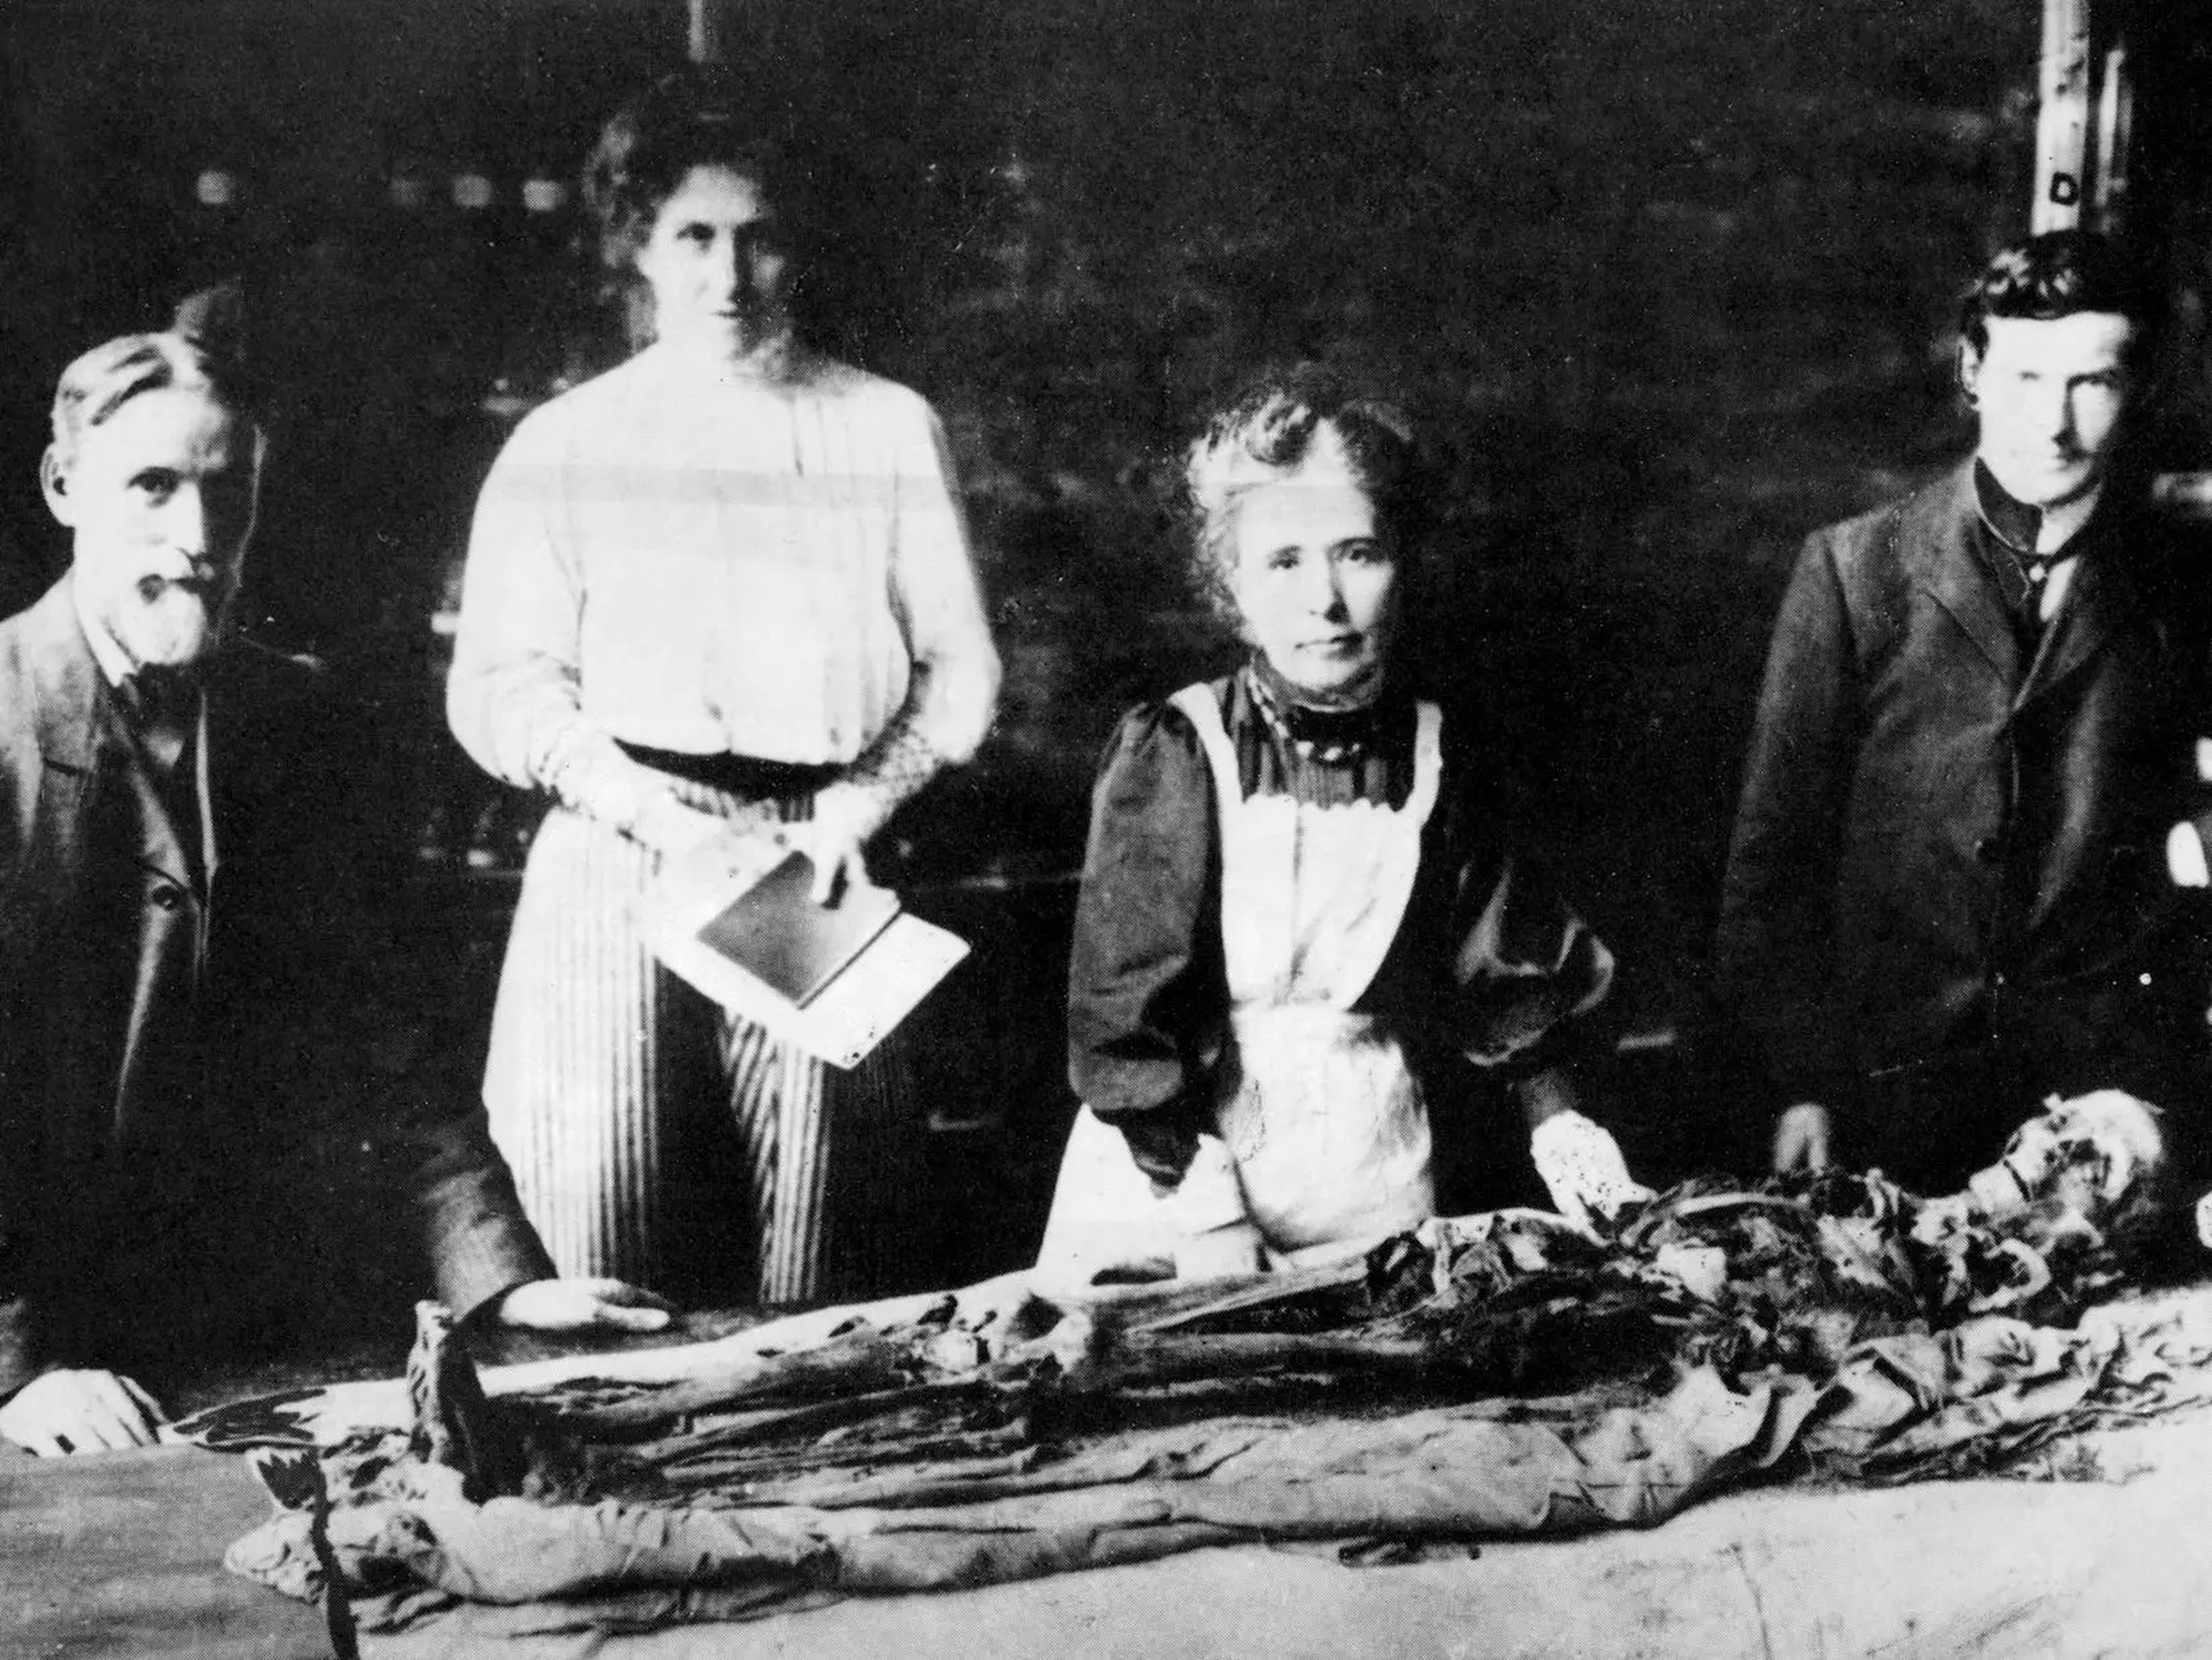 Fotografía monocroma de 1898 que muestra la última momia británica desenvuelta en condiciones científicas, en la Universidad de Manchester, dirigida por la Dra. Murray (3ª a la izquierda), la primera egiptóloga, y su ayudante Winnifred Crompton.